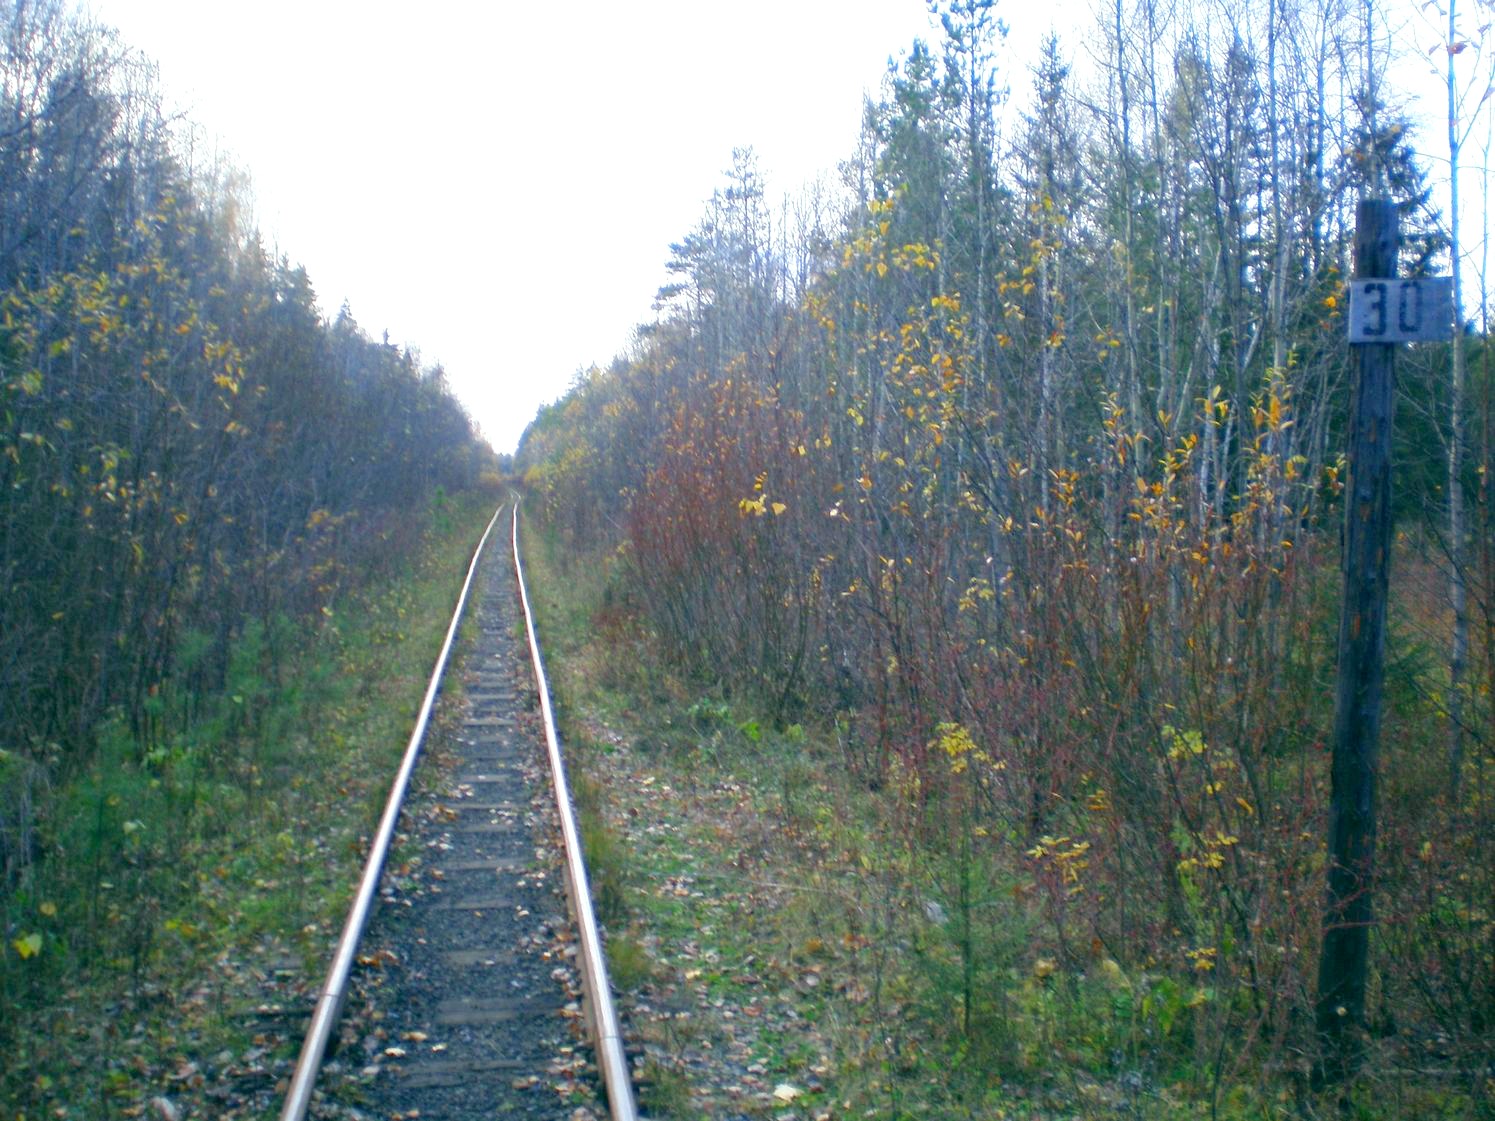 Висимо-Уткинская узкоколейная железная дорога  — фотографии, сделанные в 2007 году (часть 11)